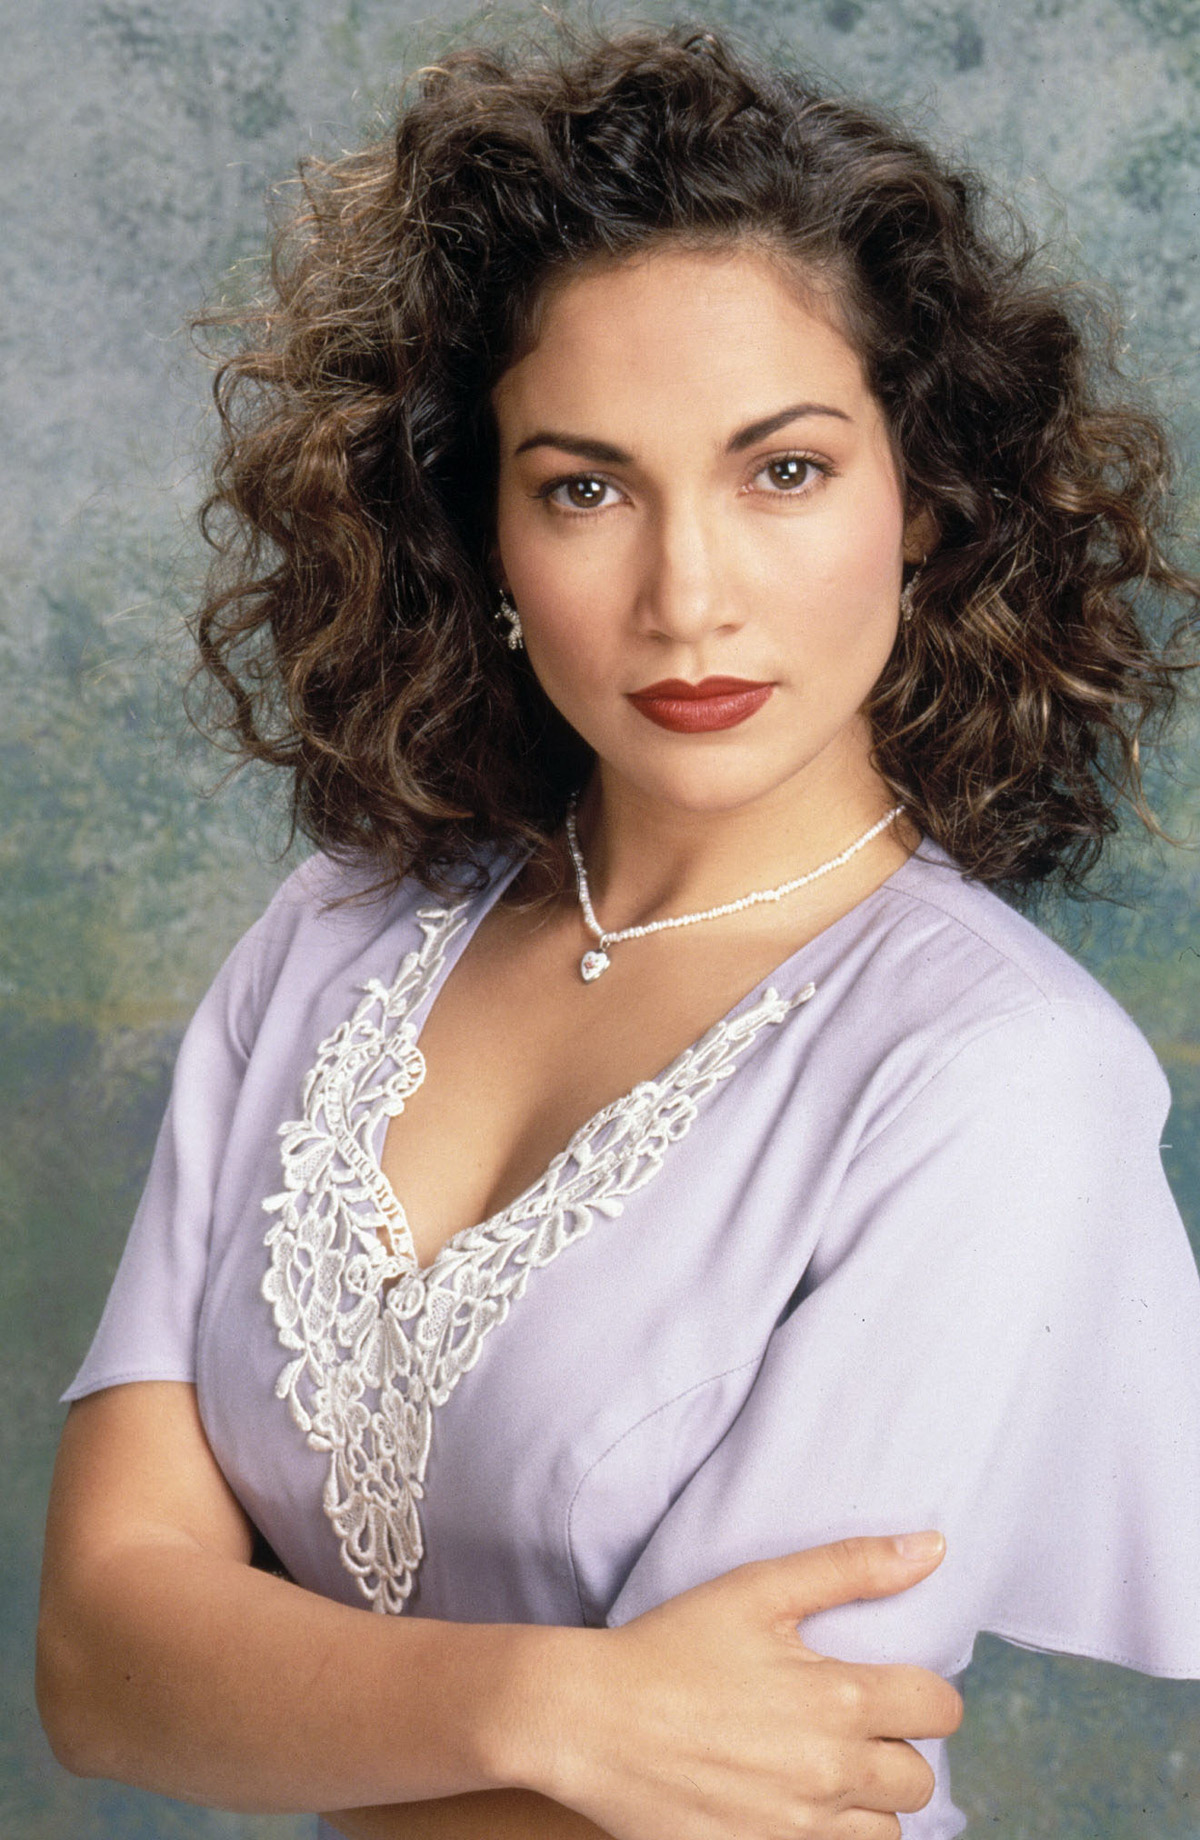 Jennifer Lopez, wie sie 1993 fotografiert wurde. | Quelle: Getty Images